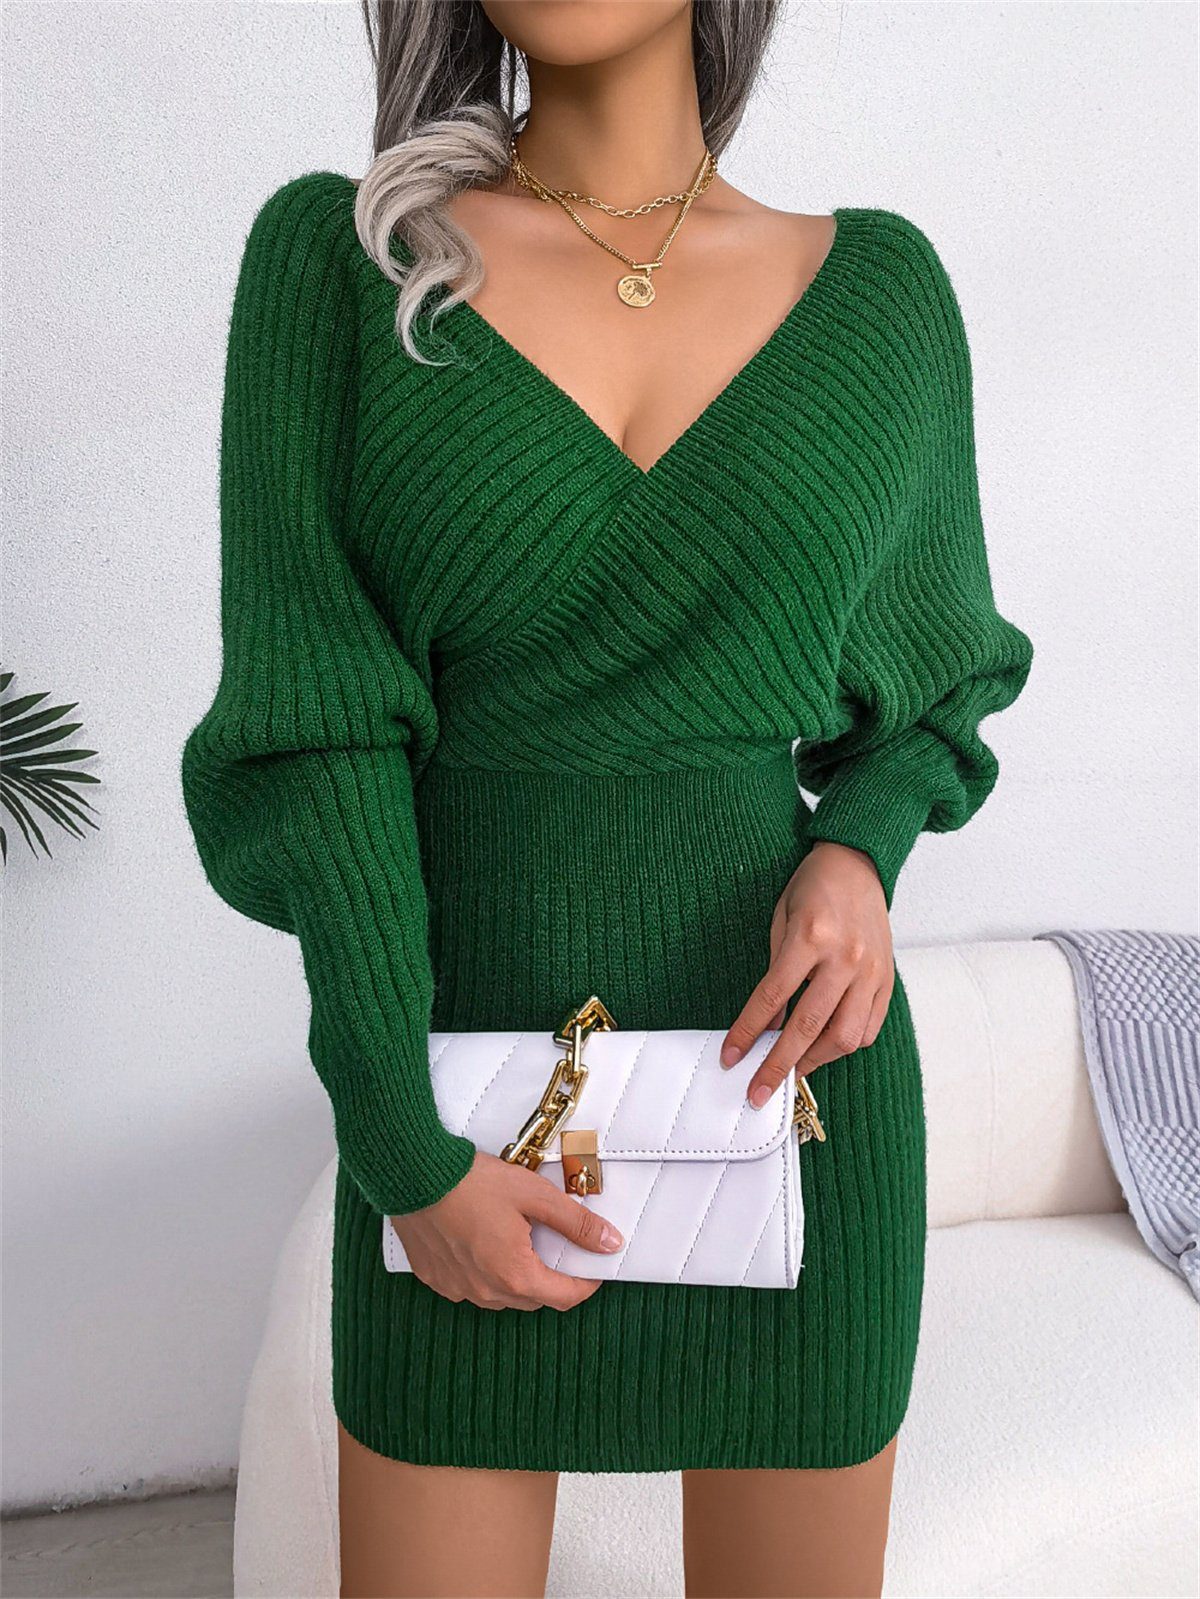 selected carefully Sexy grün V-Ausschnitt Damen-Tunika-Pulloverkleid mit Strickkleid Jersey und